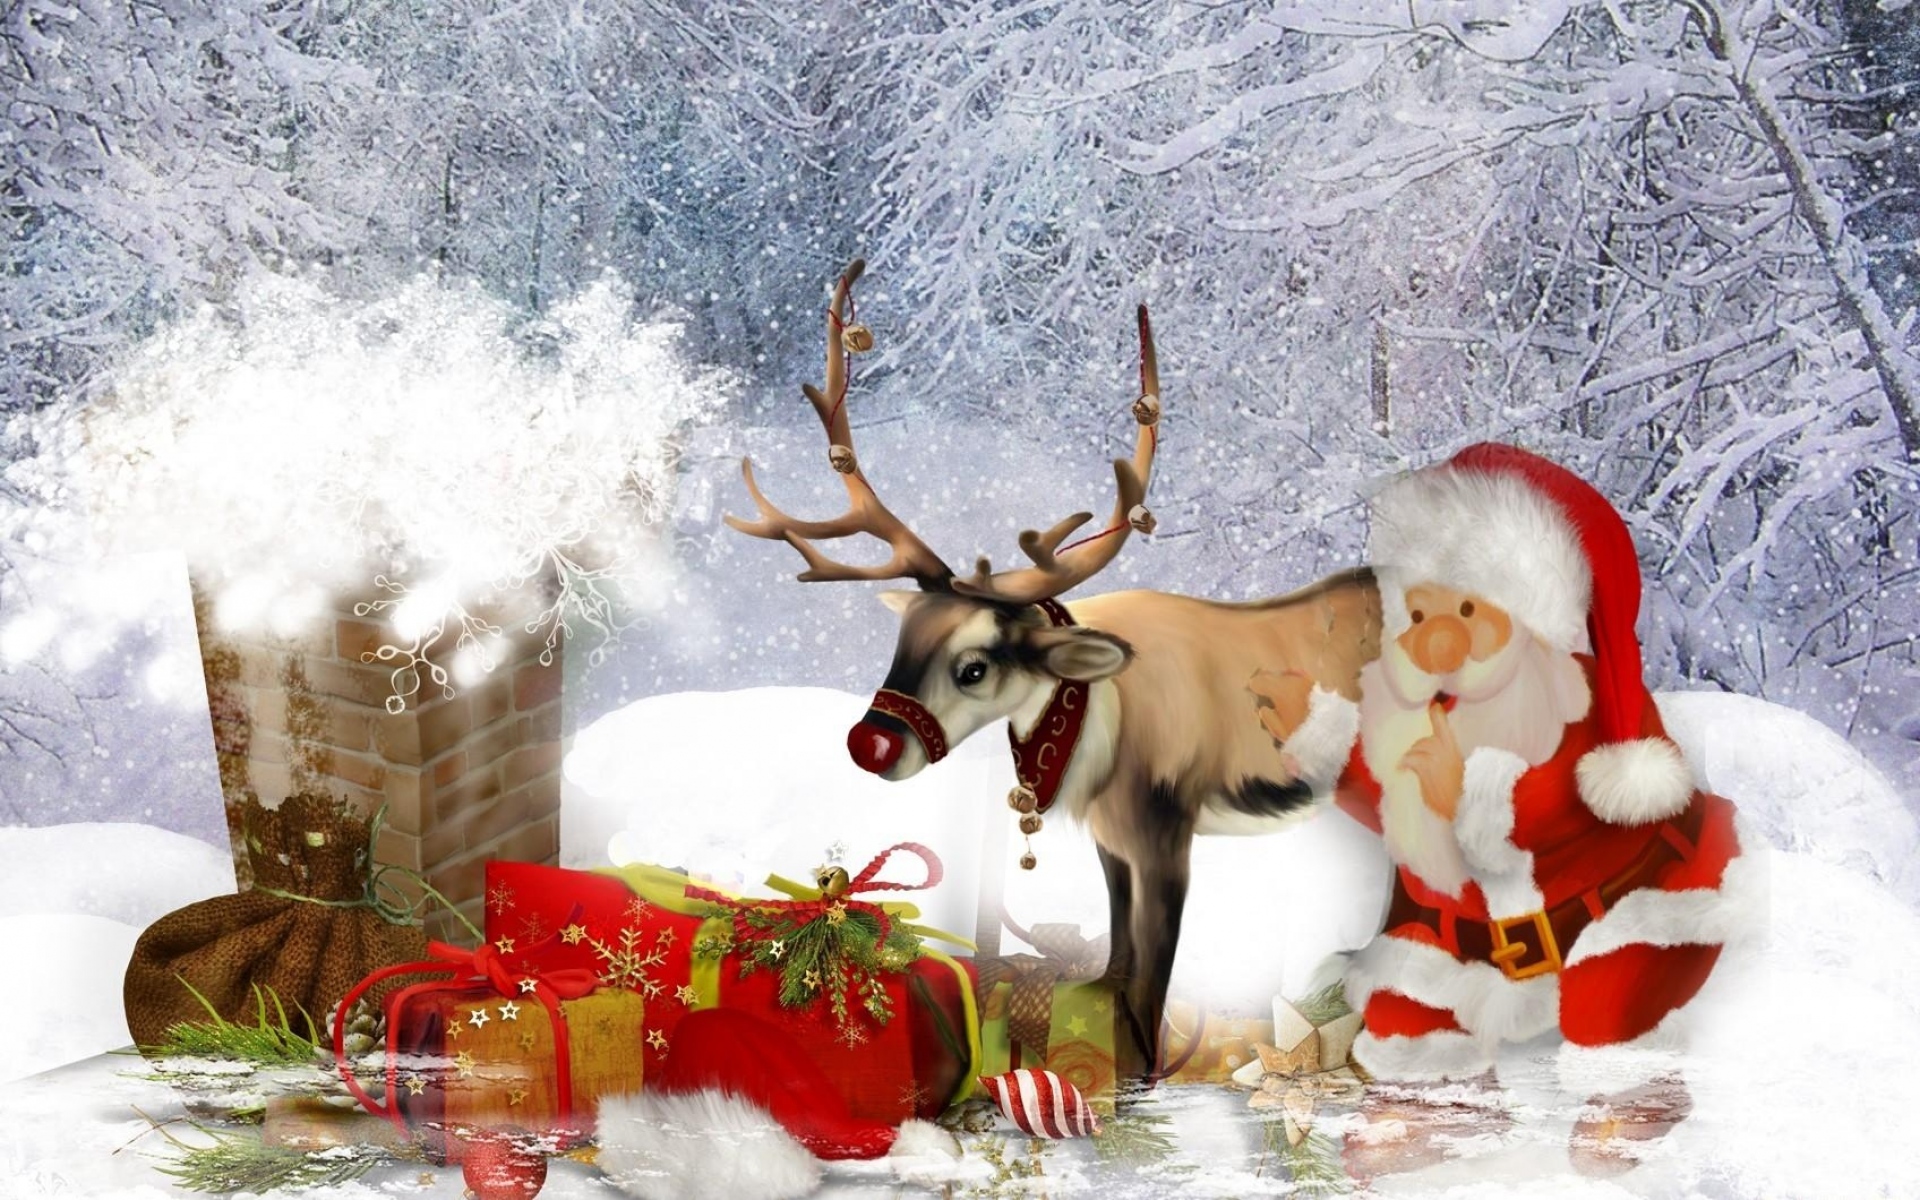 Картинки Олень, Санта-Клаус, труба, крыша, подарки, рождество фото и обои на рабочий стол